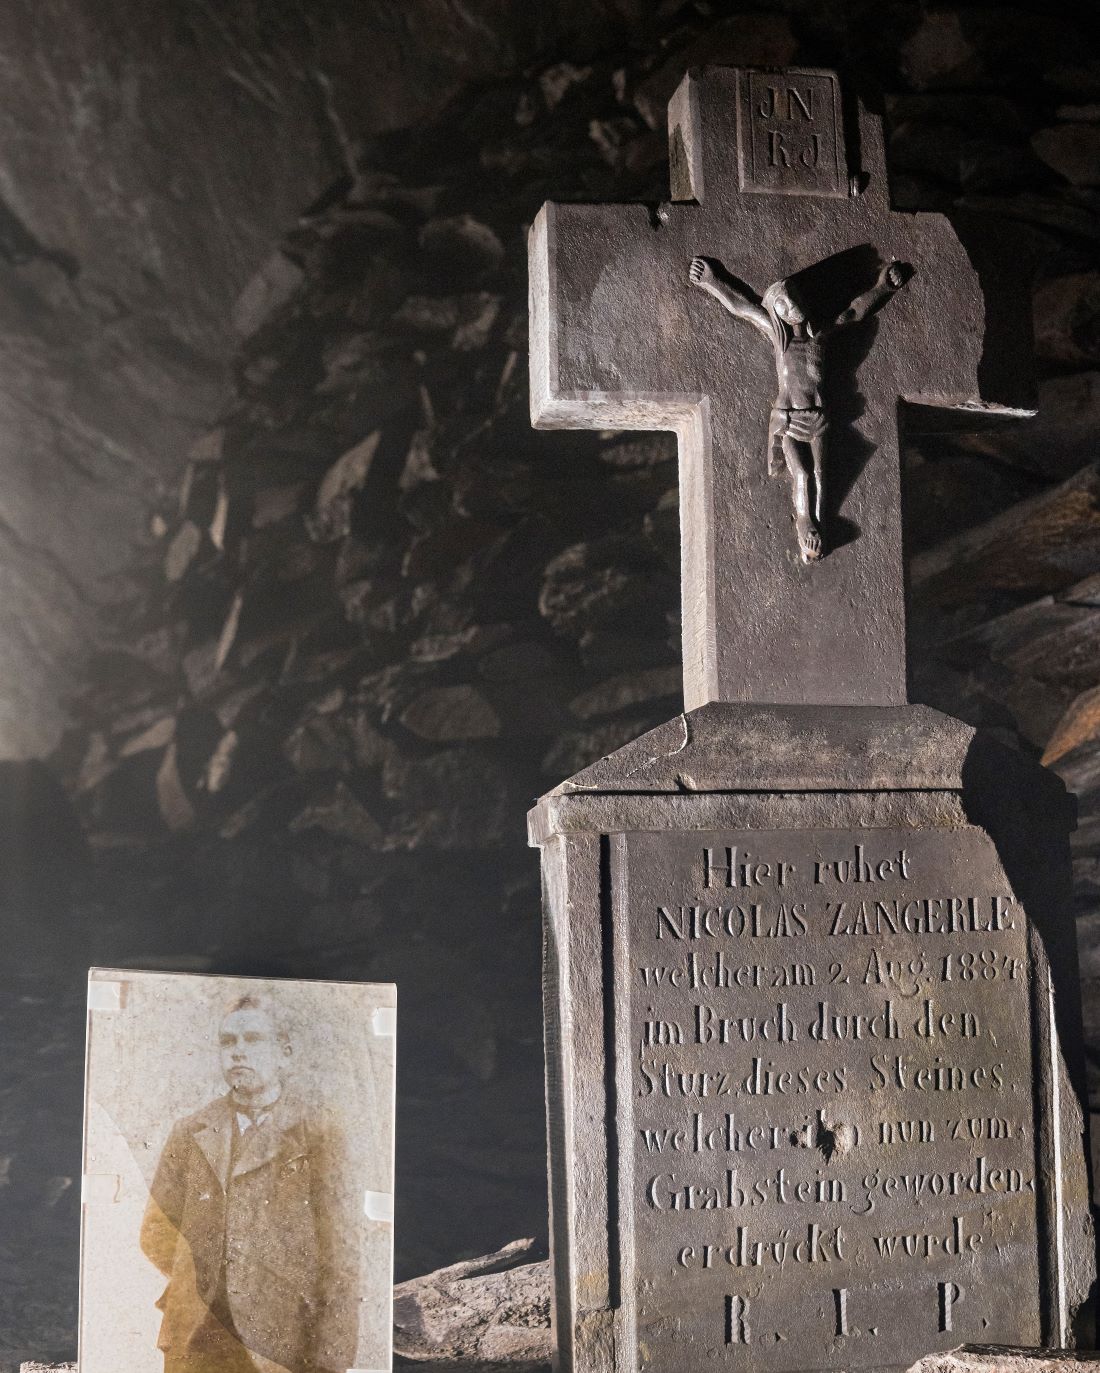 À l'intérieur de la grotte minière, une pierre tombale a été érigée à la mémoire d'un mineur qui y est mort.